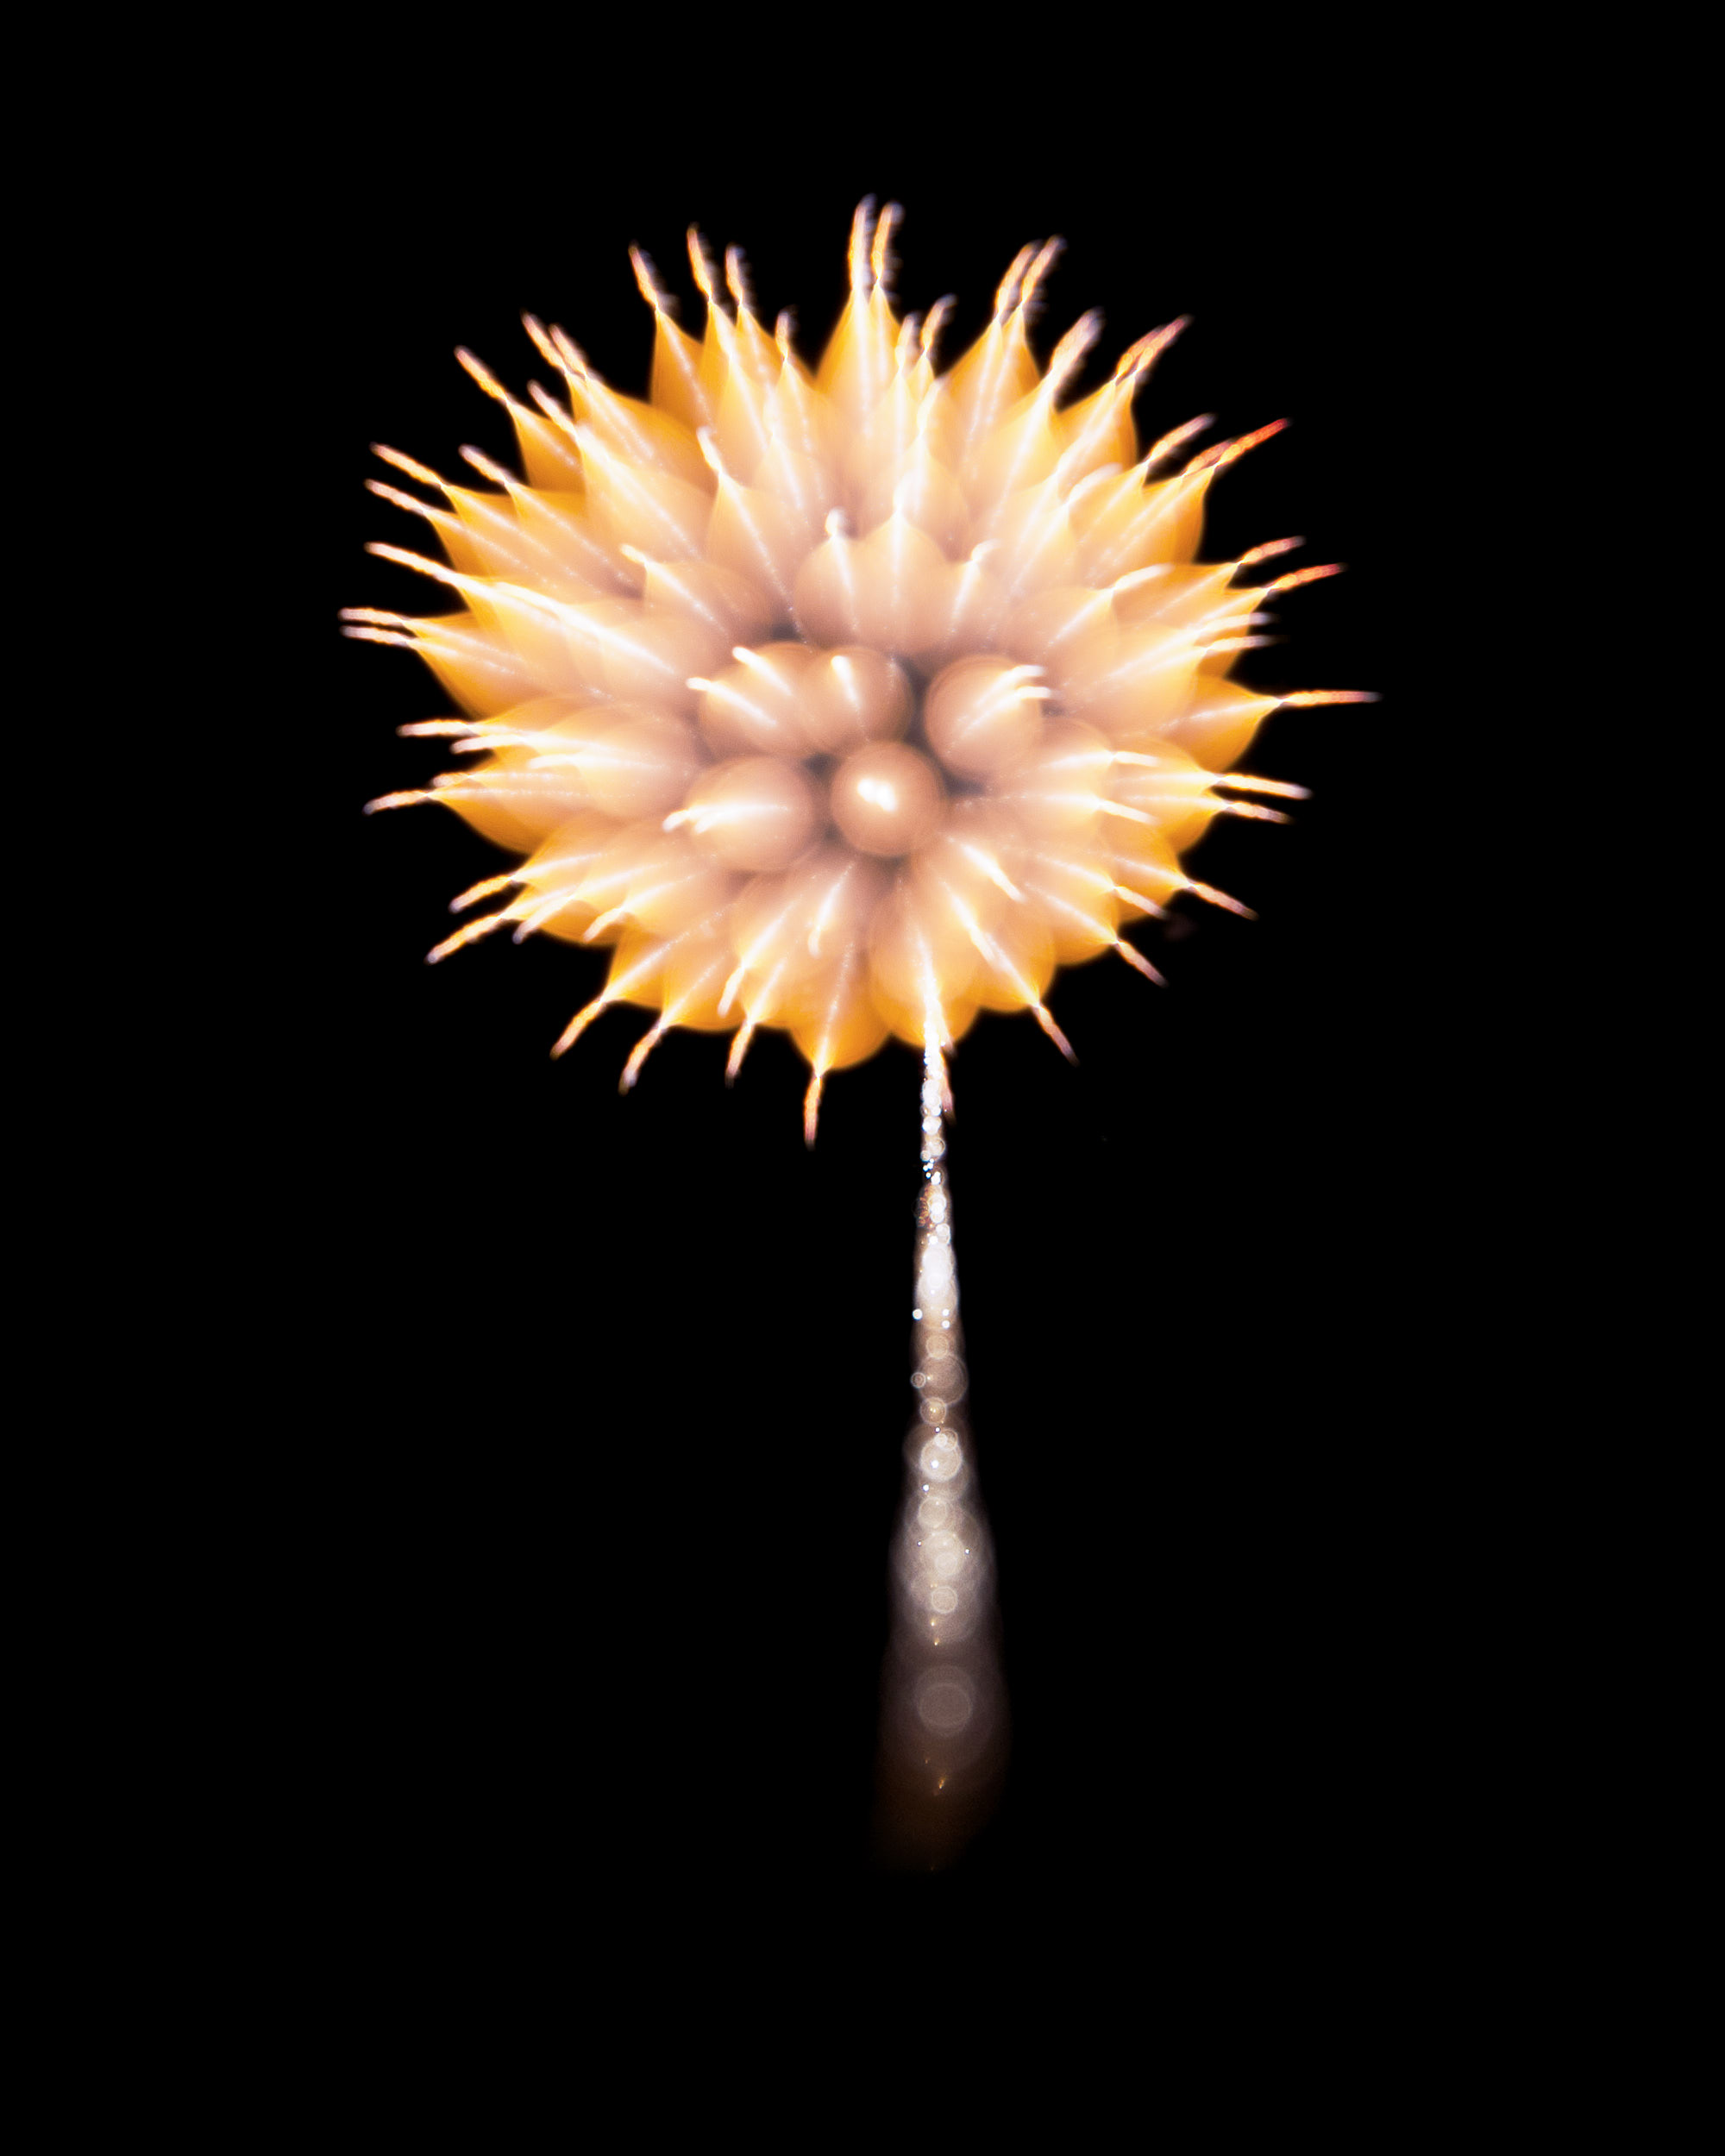 Firework Photo, Night Flower 26, WIRED Magazine 